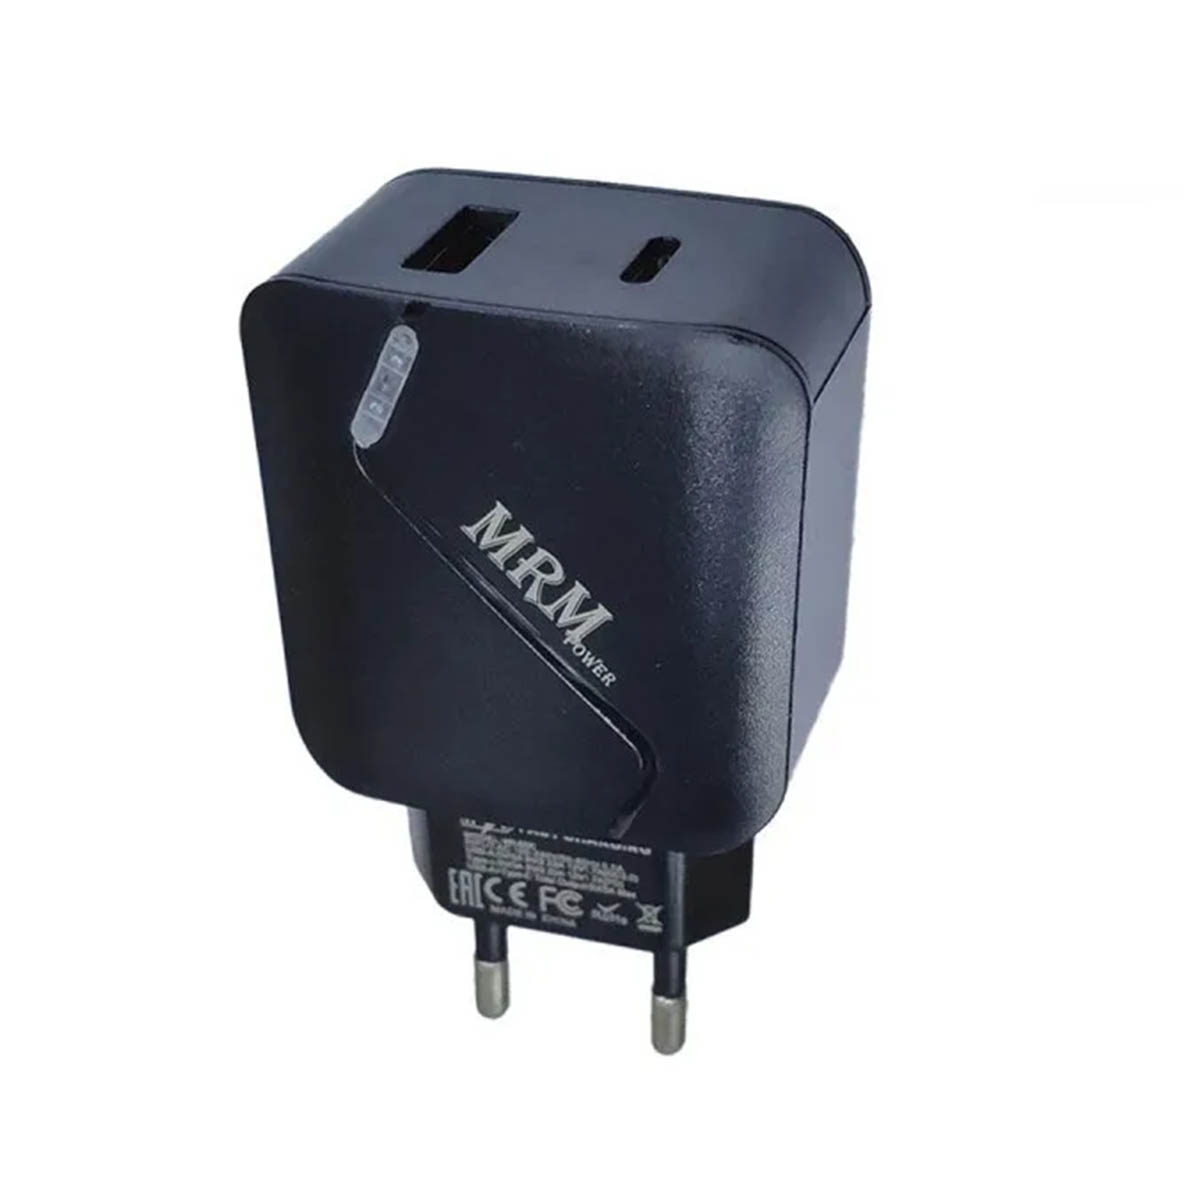 СЗУ (Сетевое зарядное устройство) MRM MR820C, PD 20W, QC 3.0, 1 USB, 1 Type C, цвет черный